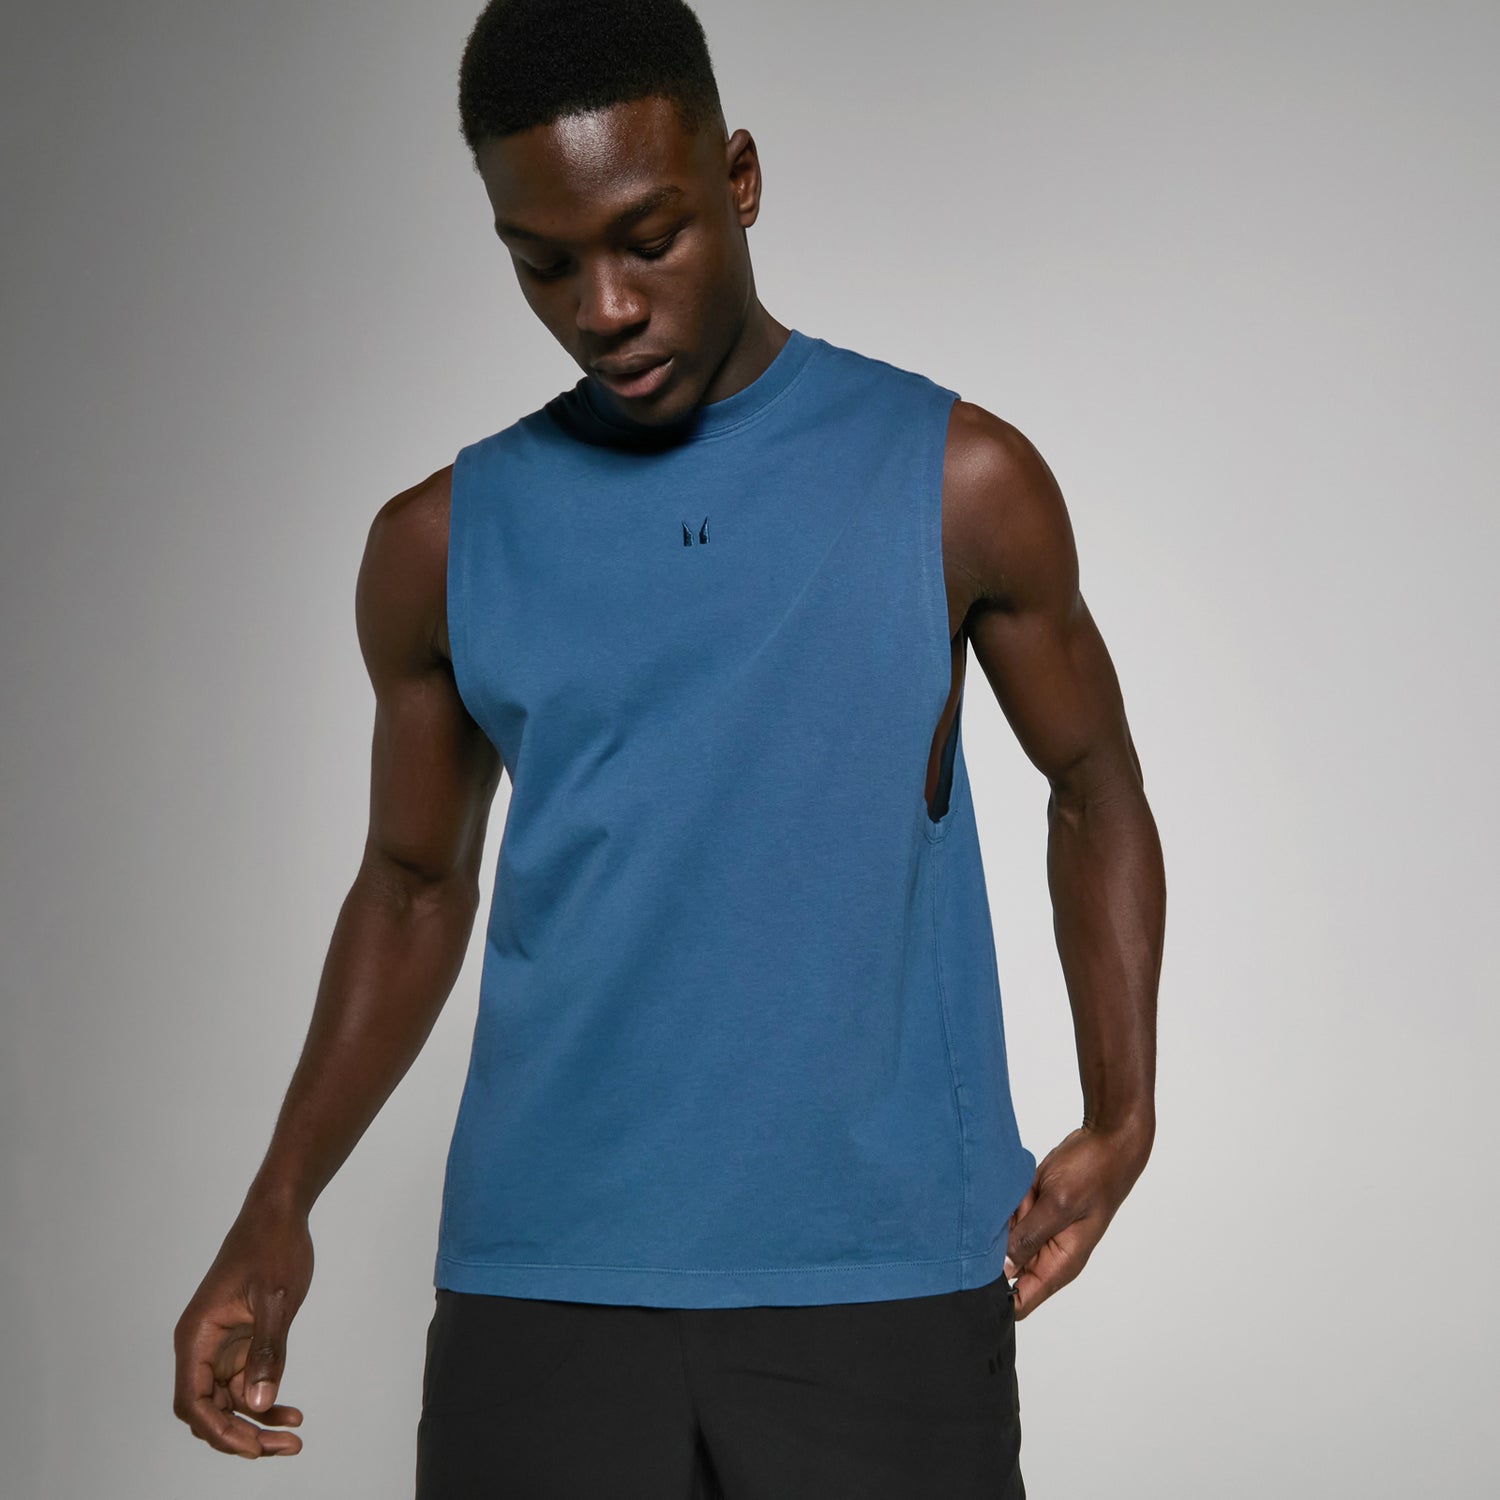 Camiseta sin mangas con sisas caídas de efecto lavado Tempo para hombre - Azul marino lavado - XS